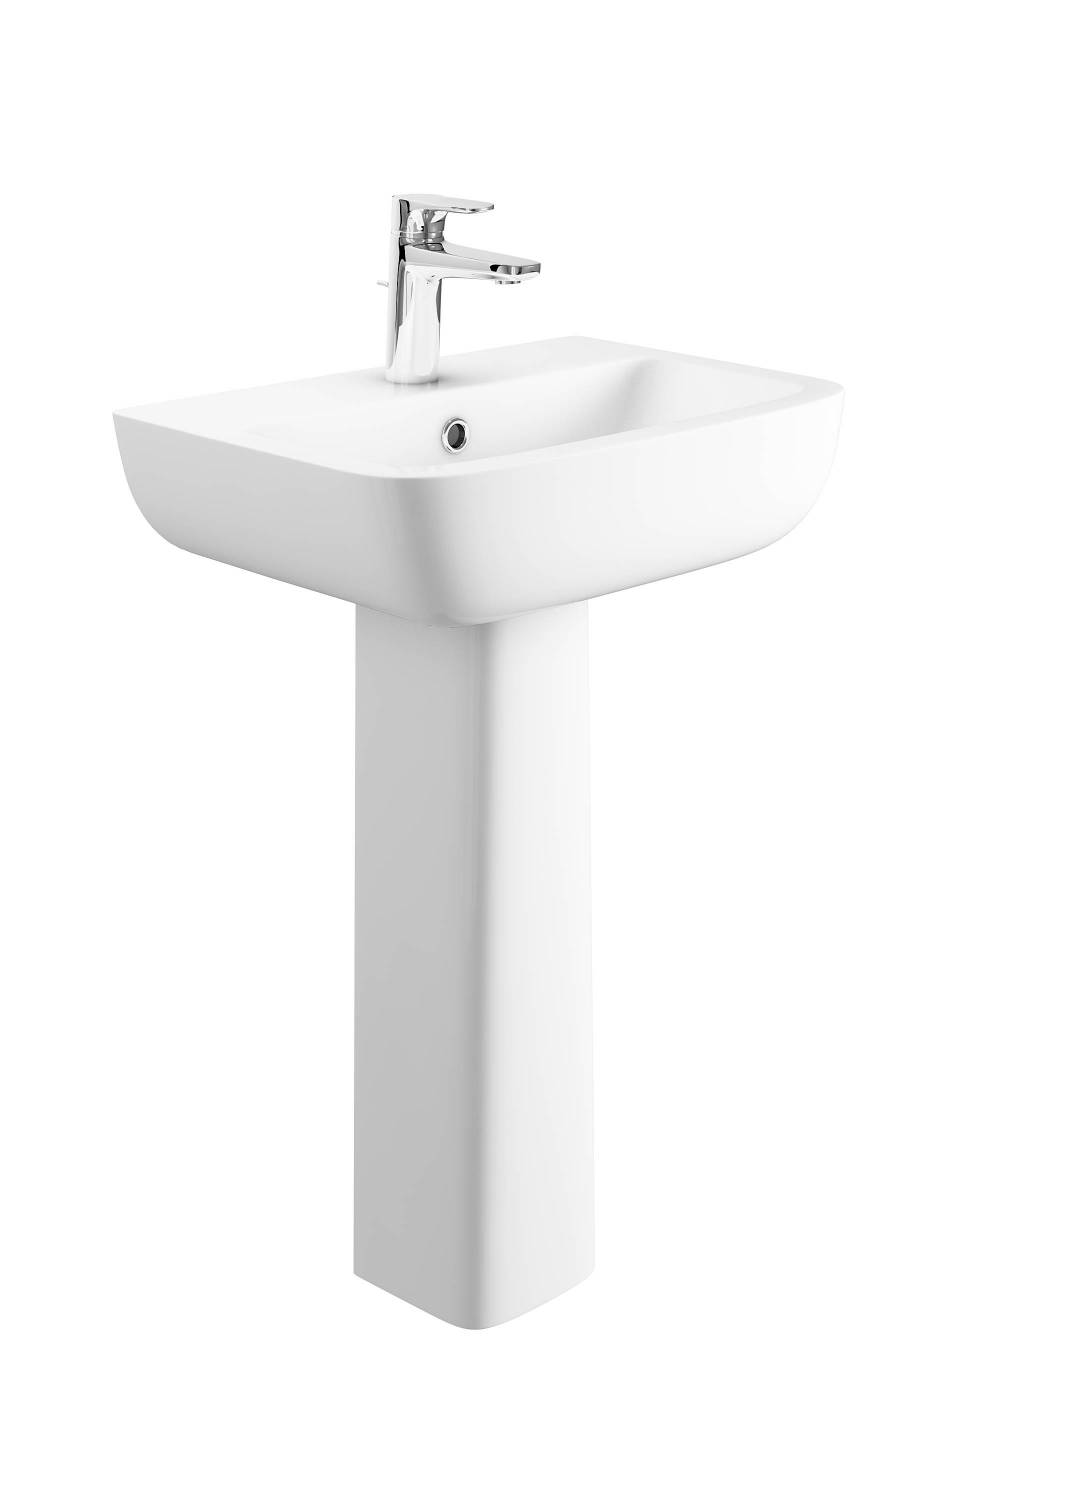 Designer Series 3 54cm 1TH basin and pedestal set